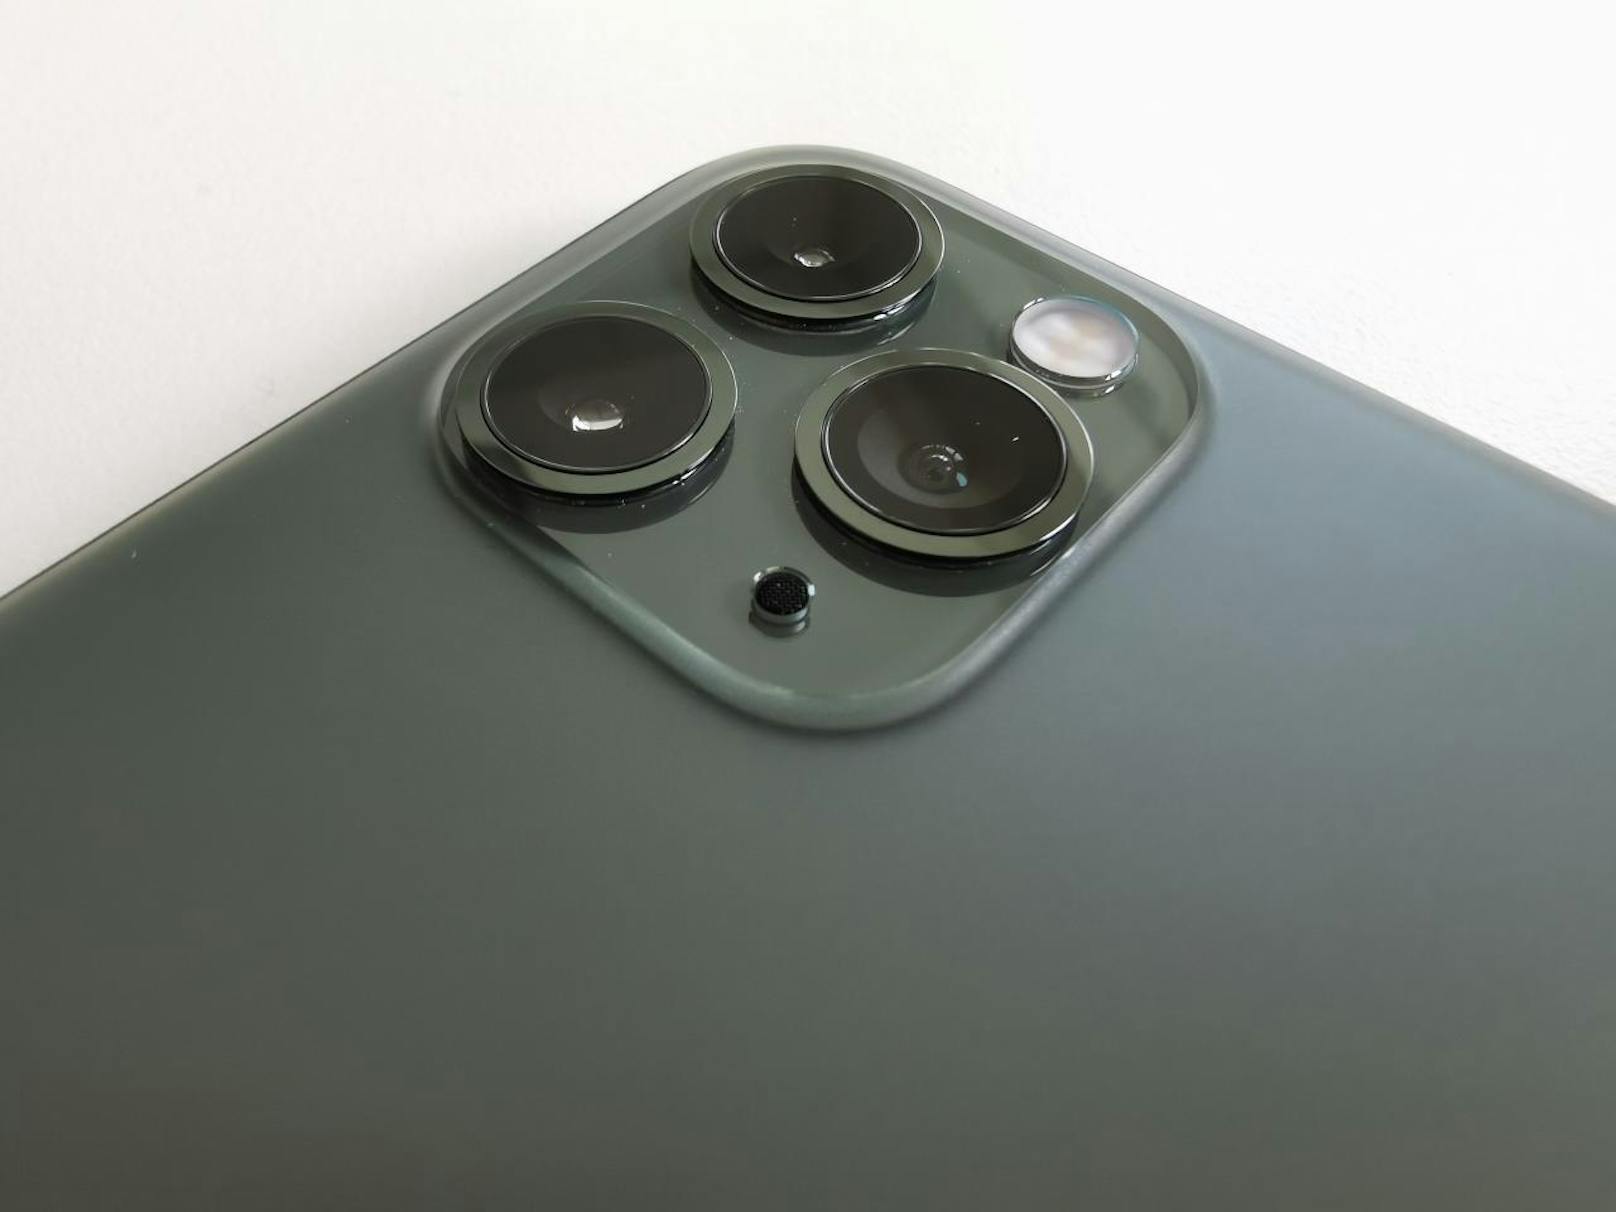 iPhone 11 Pro Test: 12 MP Dreifach-Kamera mit Ultraweitwinkel?, Weitwinkel? und Teleobjektiv und Nachtmodus